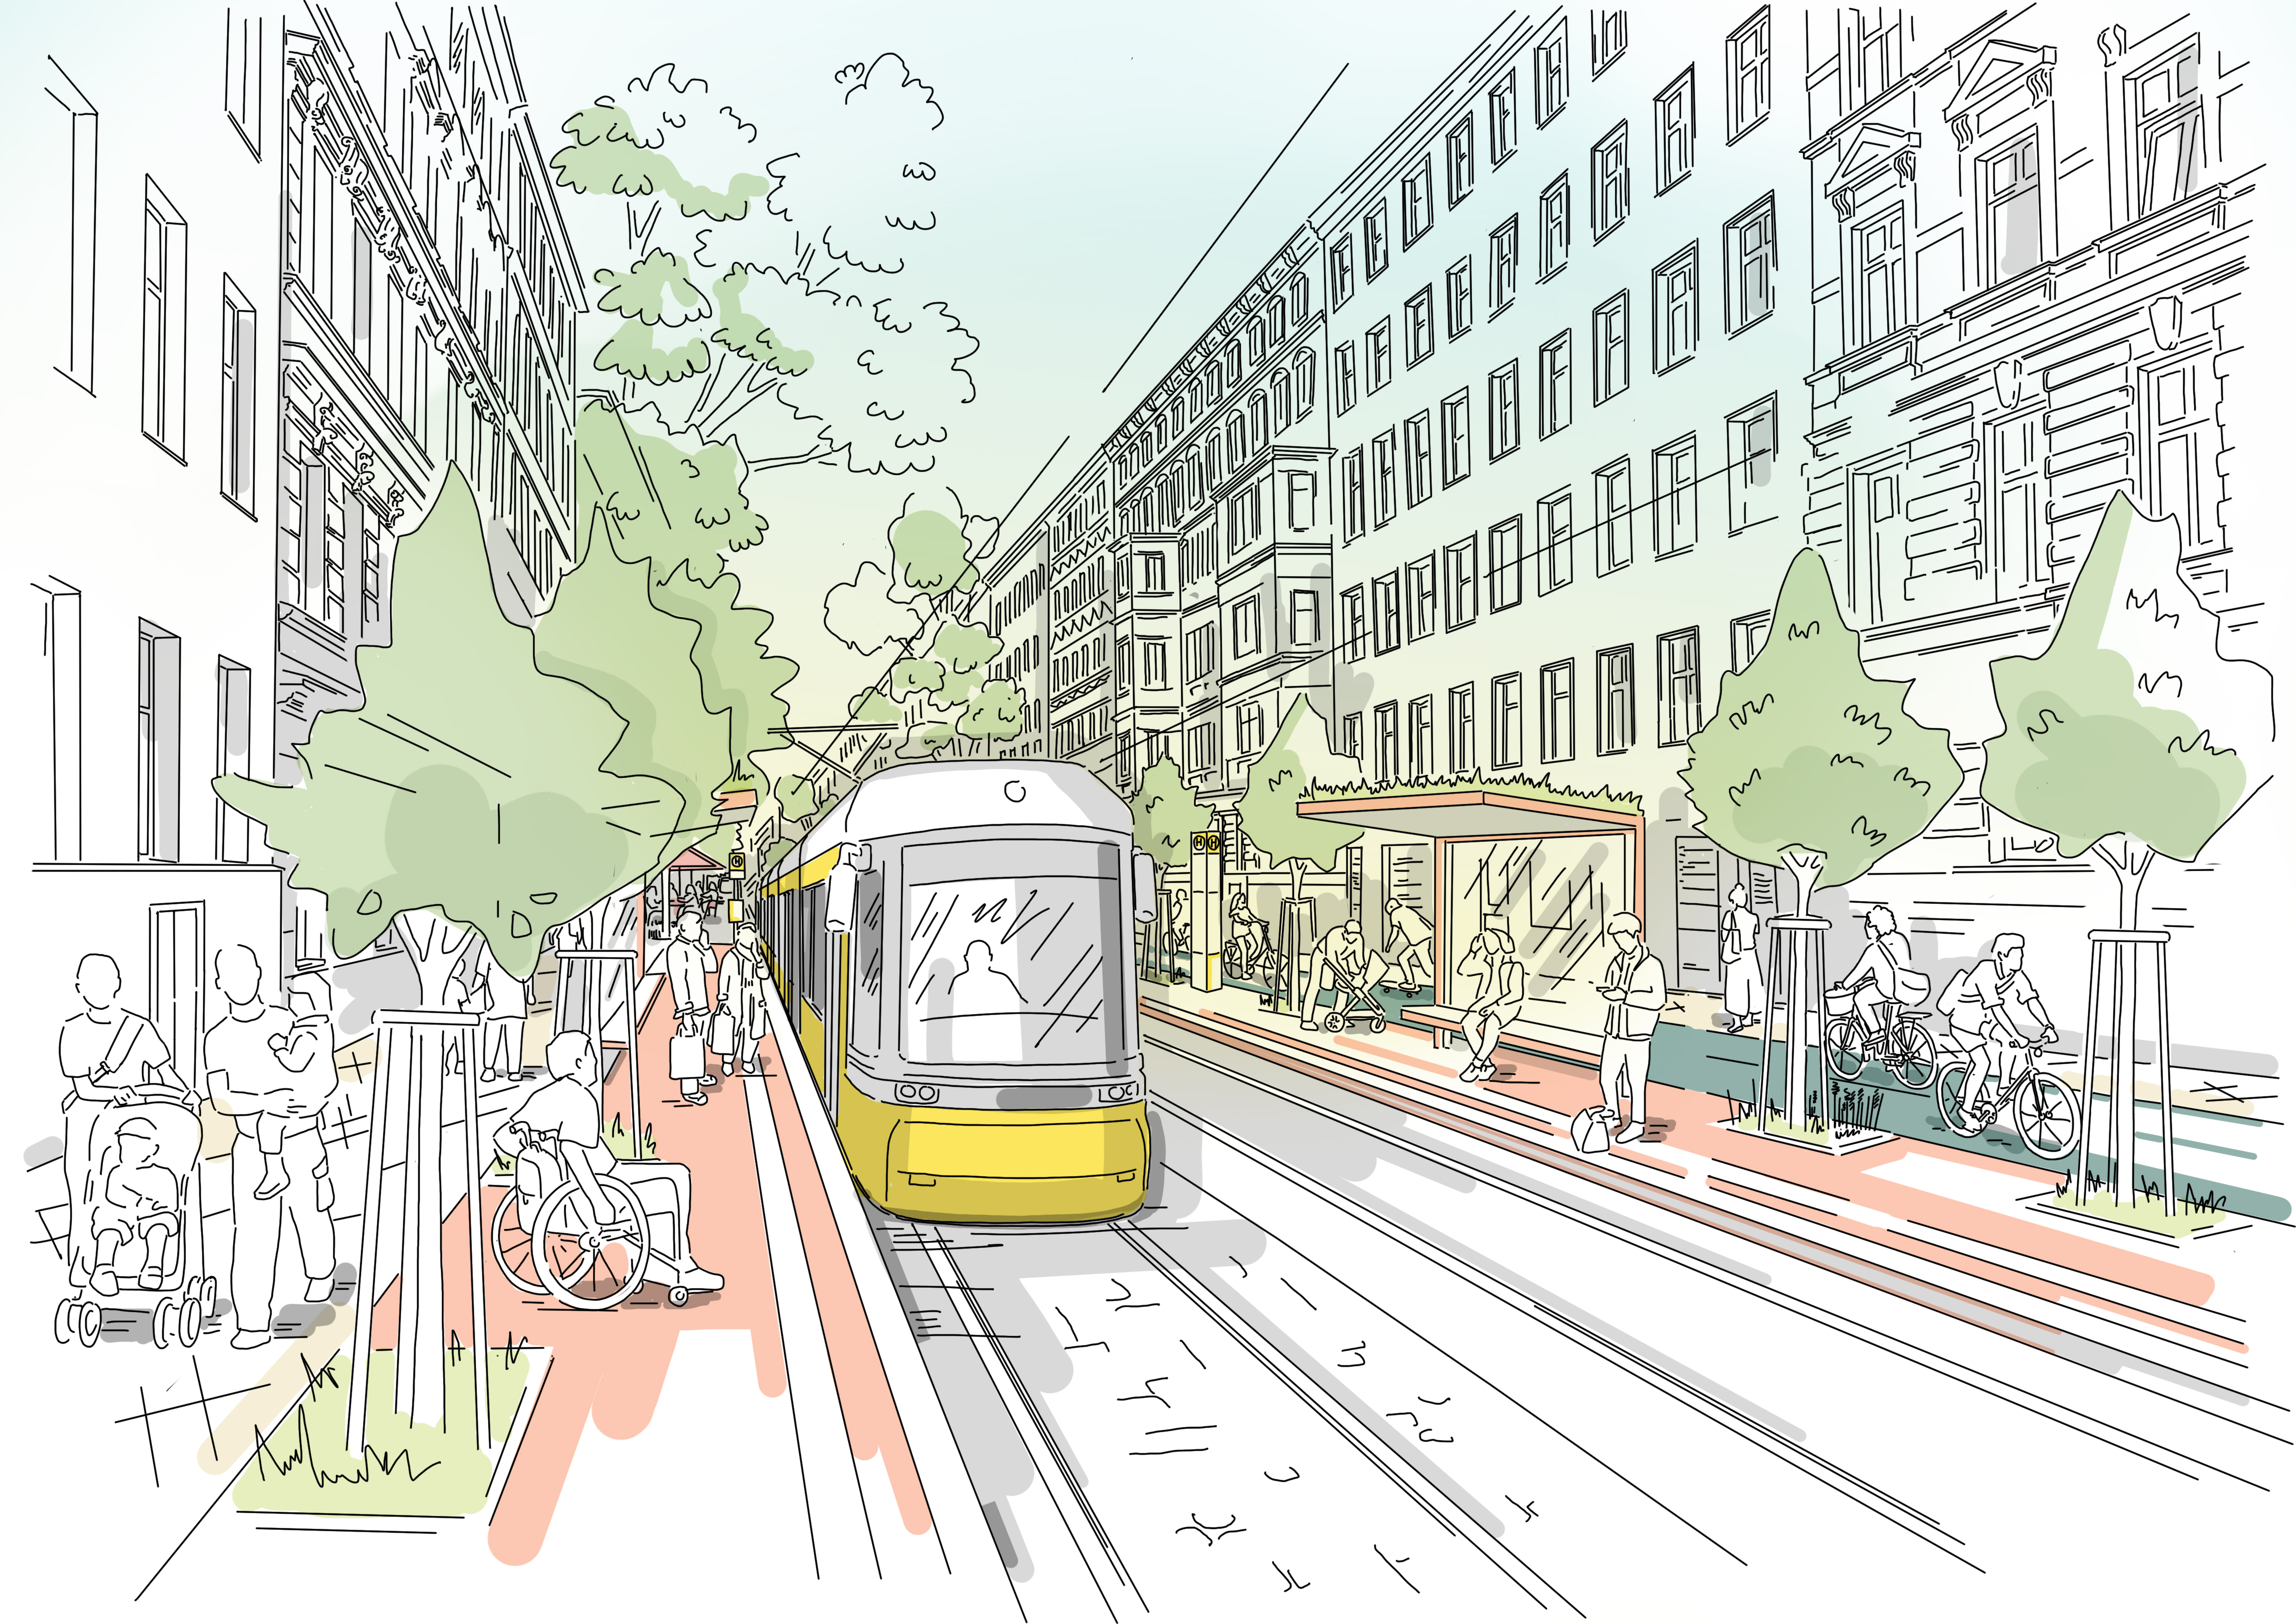 Diese Abbildung zeit eine skizzenhafte Darstellung der Straßenbahnführung in Seitenlage nach der Fertigstellung des Projekts